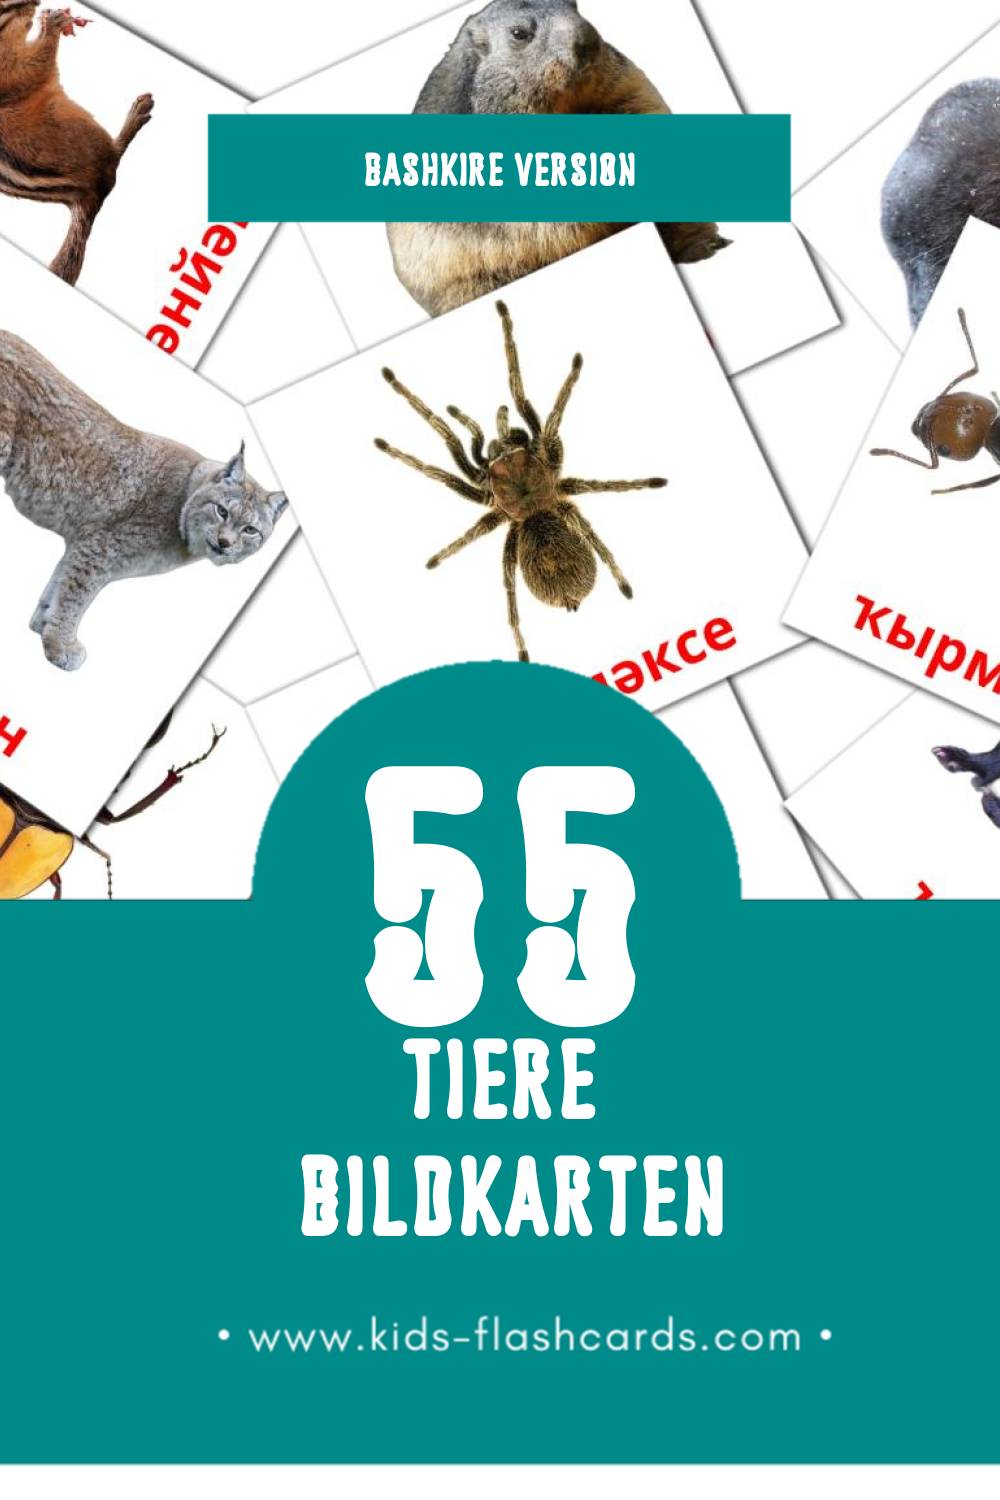 Visual Животни Flashcards für Kleinkinder (91 Karten in Bashkir)